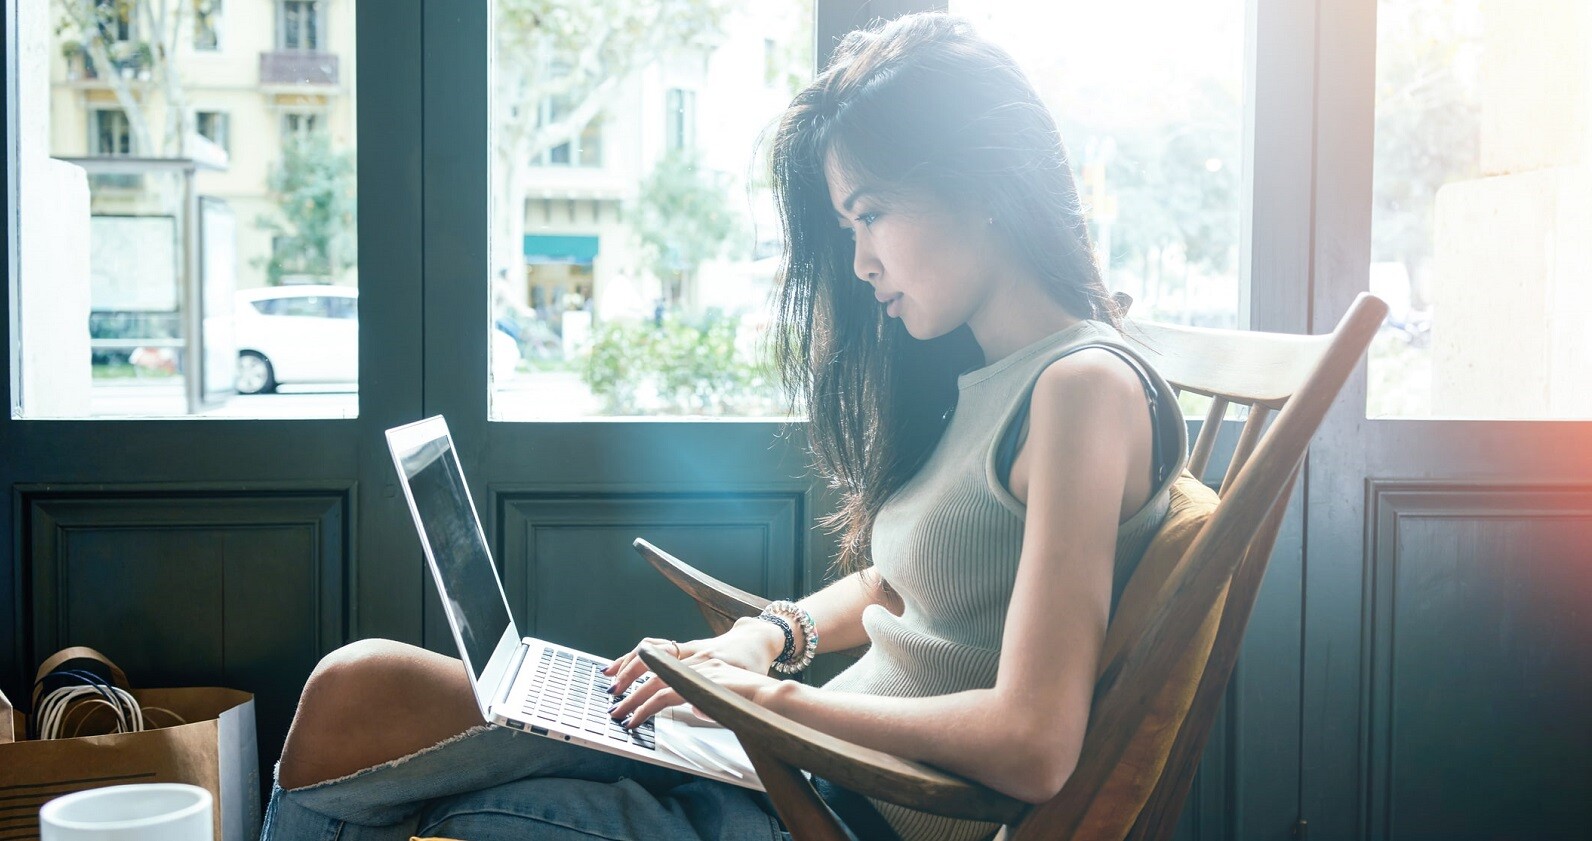 cursos gratuitos de marketing digital - foto mostra jovem mulher em um café, sentada em uma poltrona e com um computador no colo